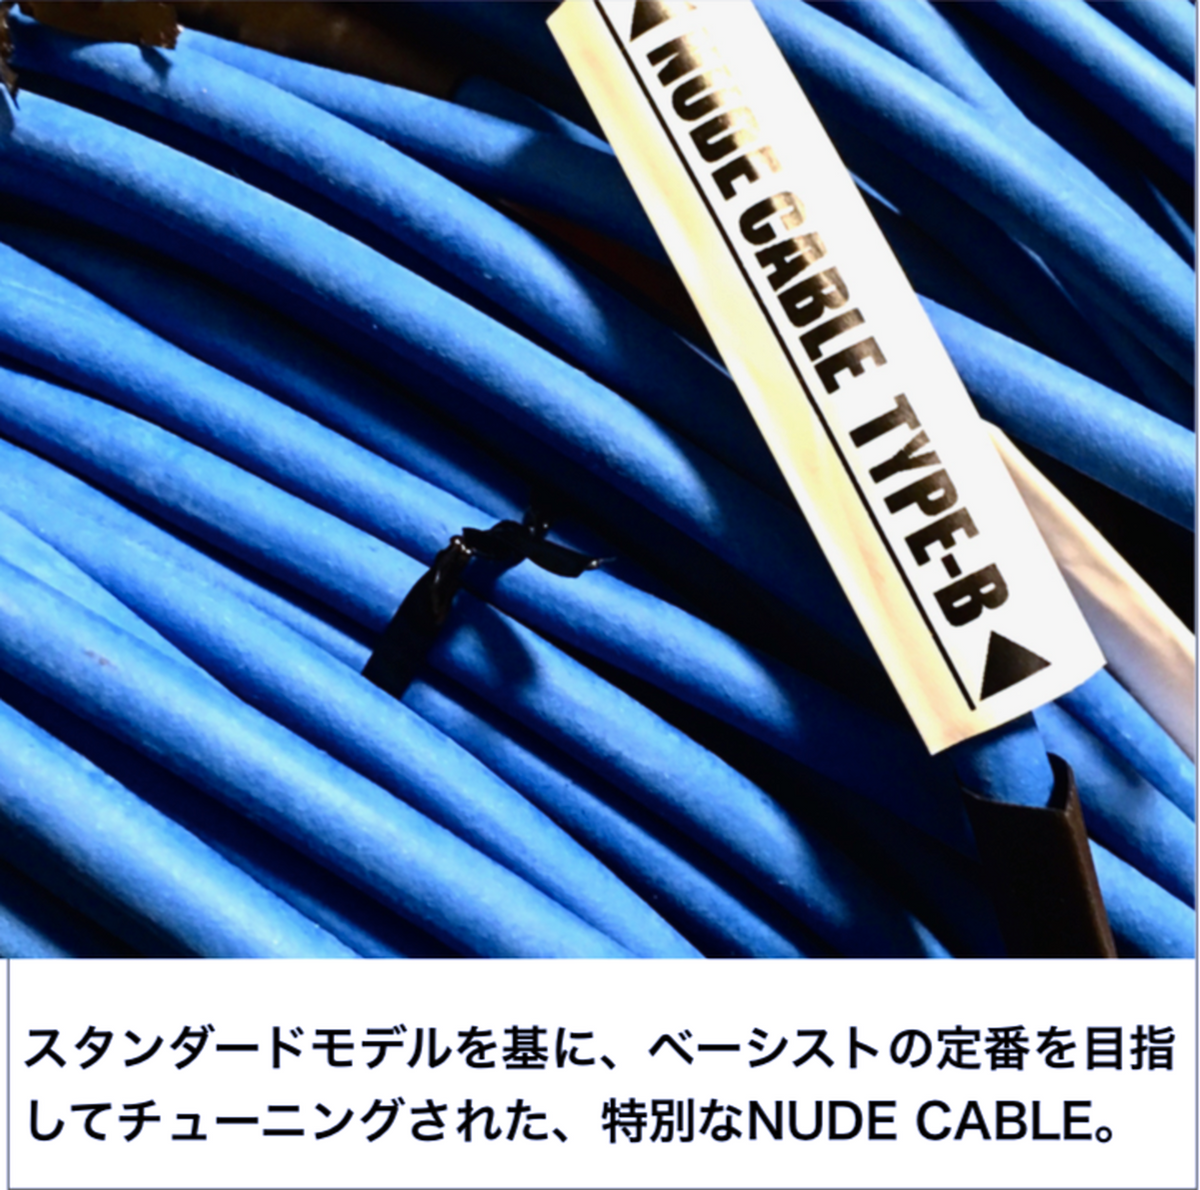 【ベース専用チューン】NUDE CABLE® Type-B 5m L-S